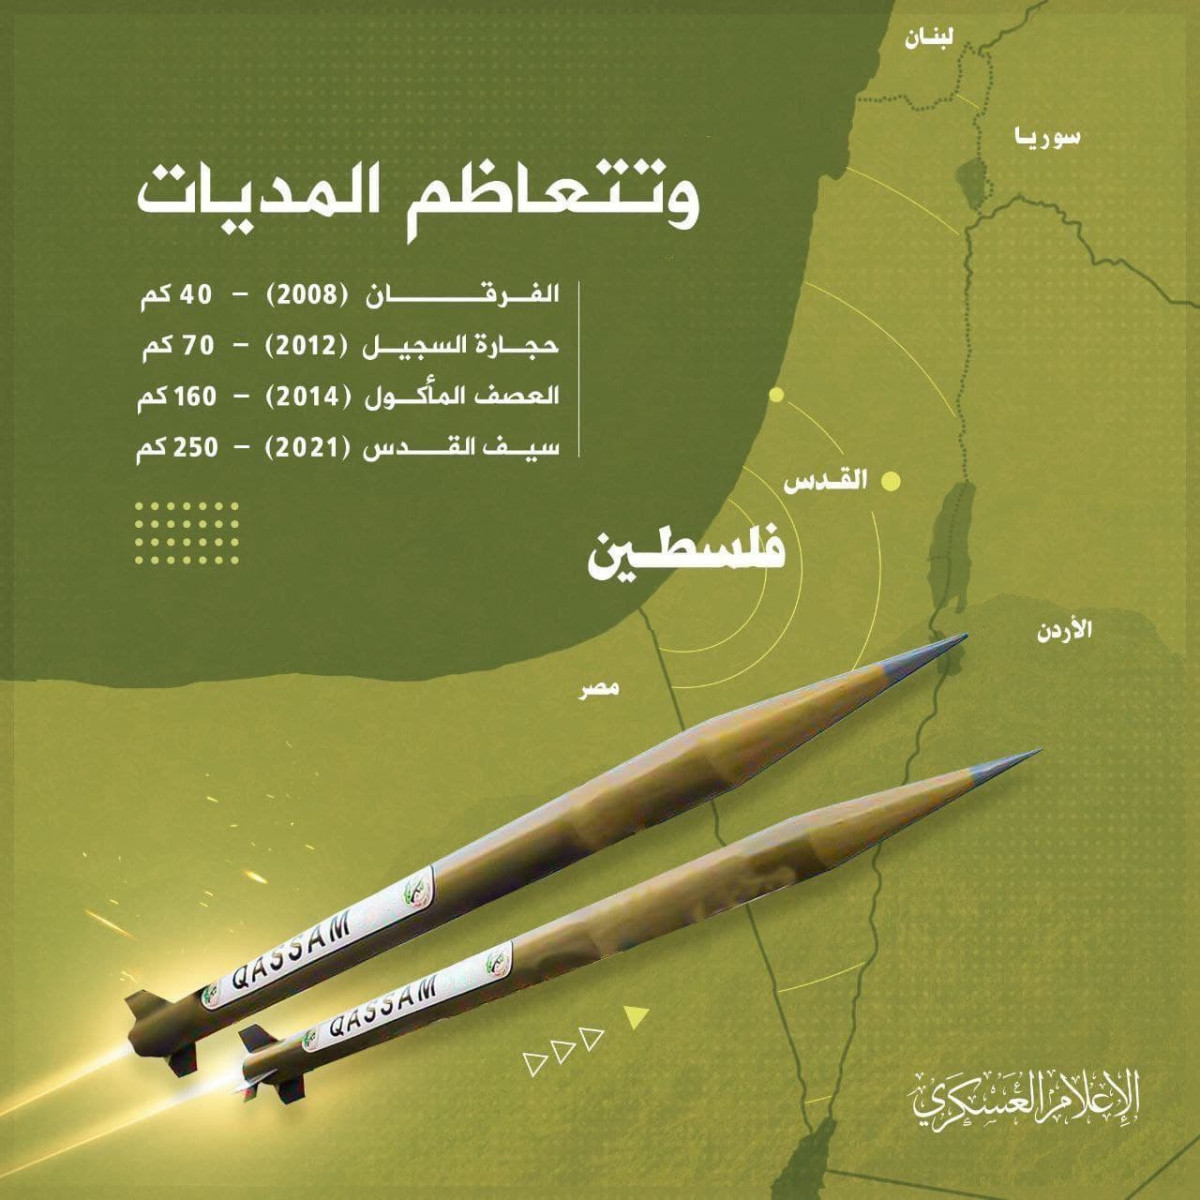 انفوجرافيك / تعاظم المديات لصواريخ القسام